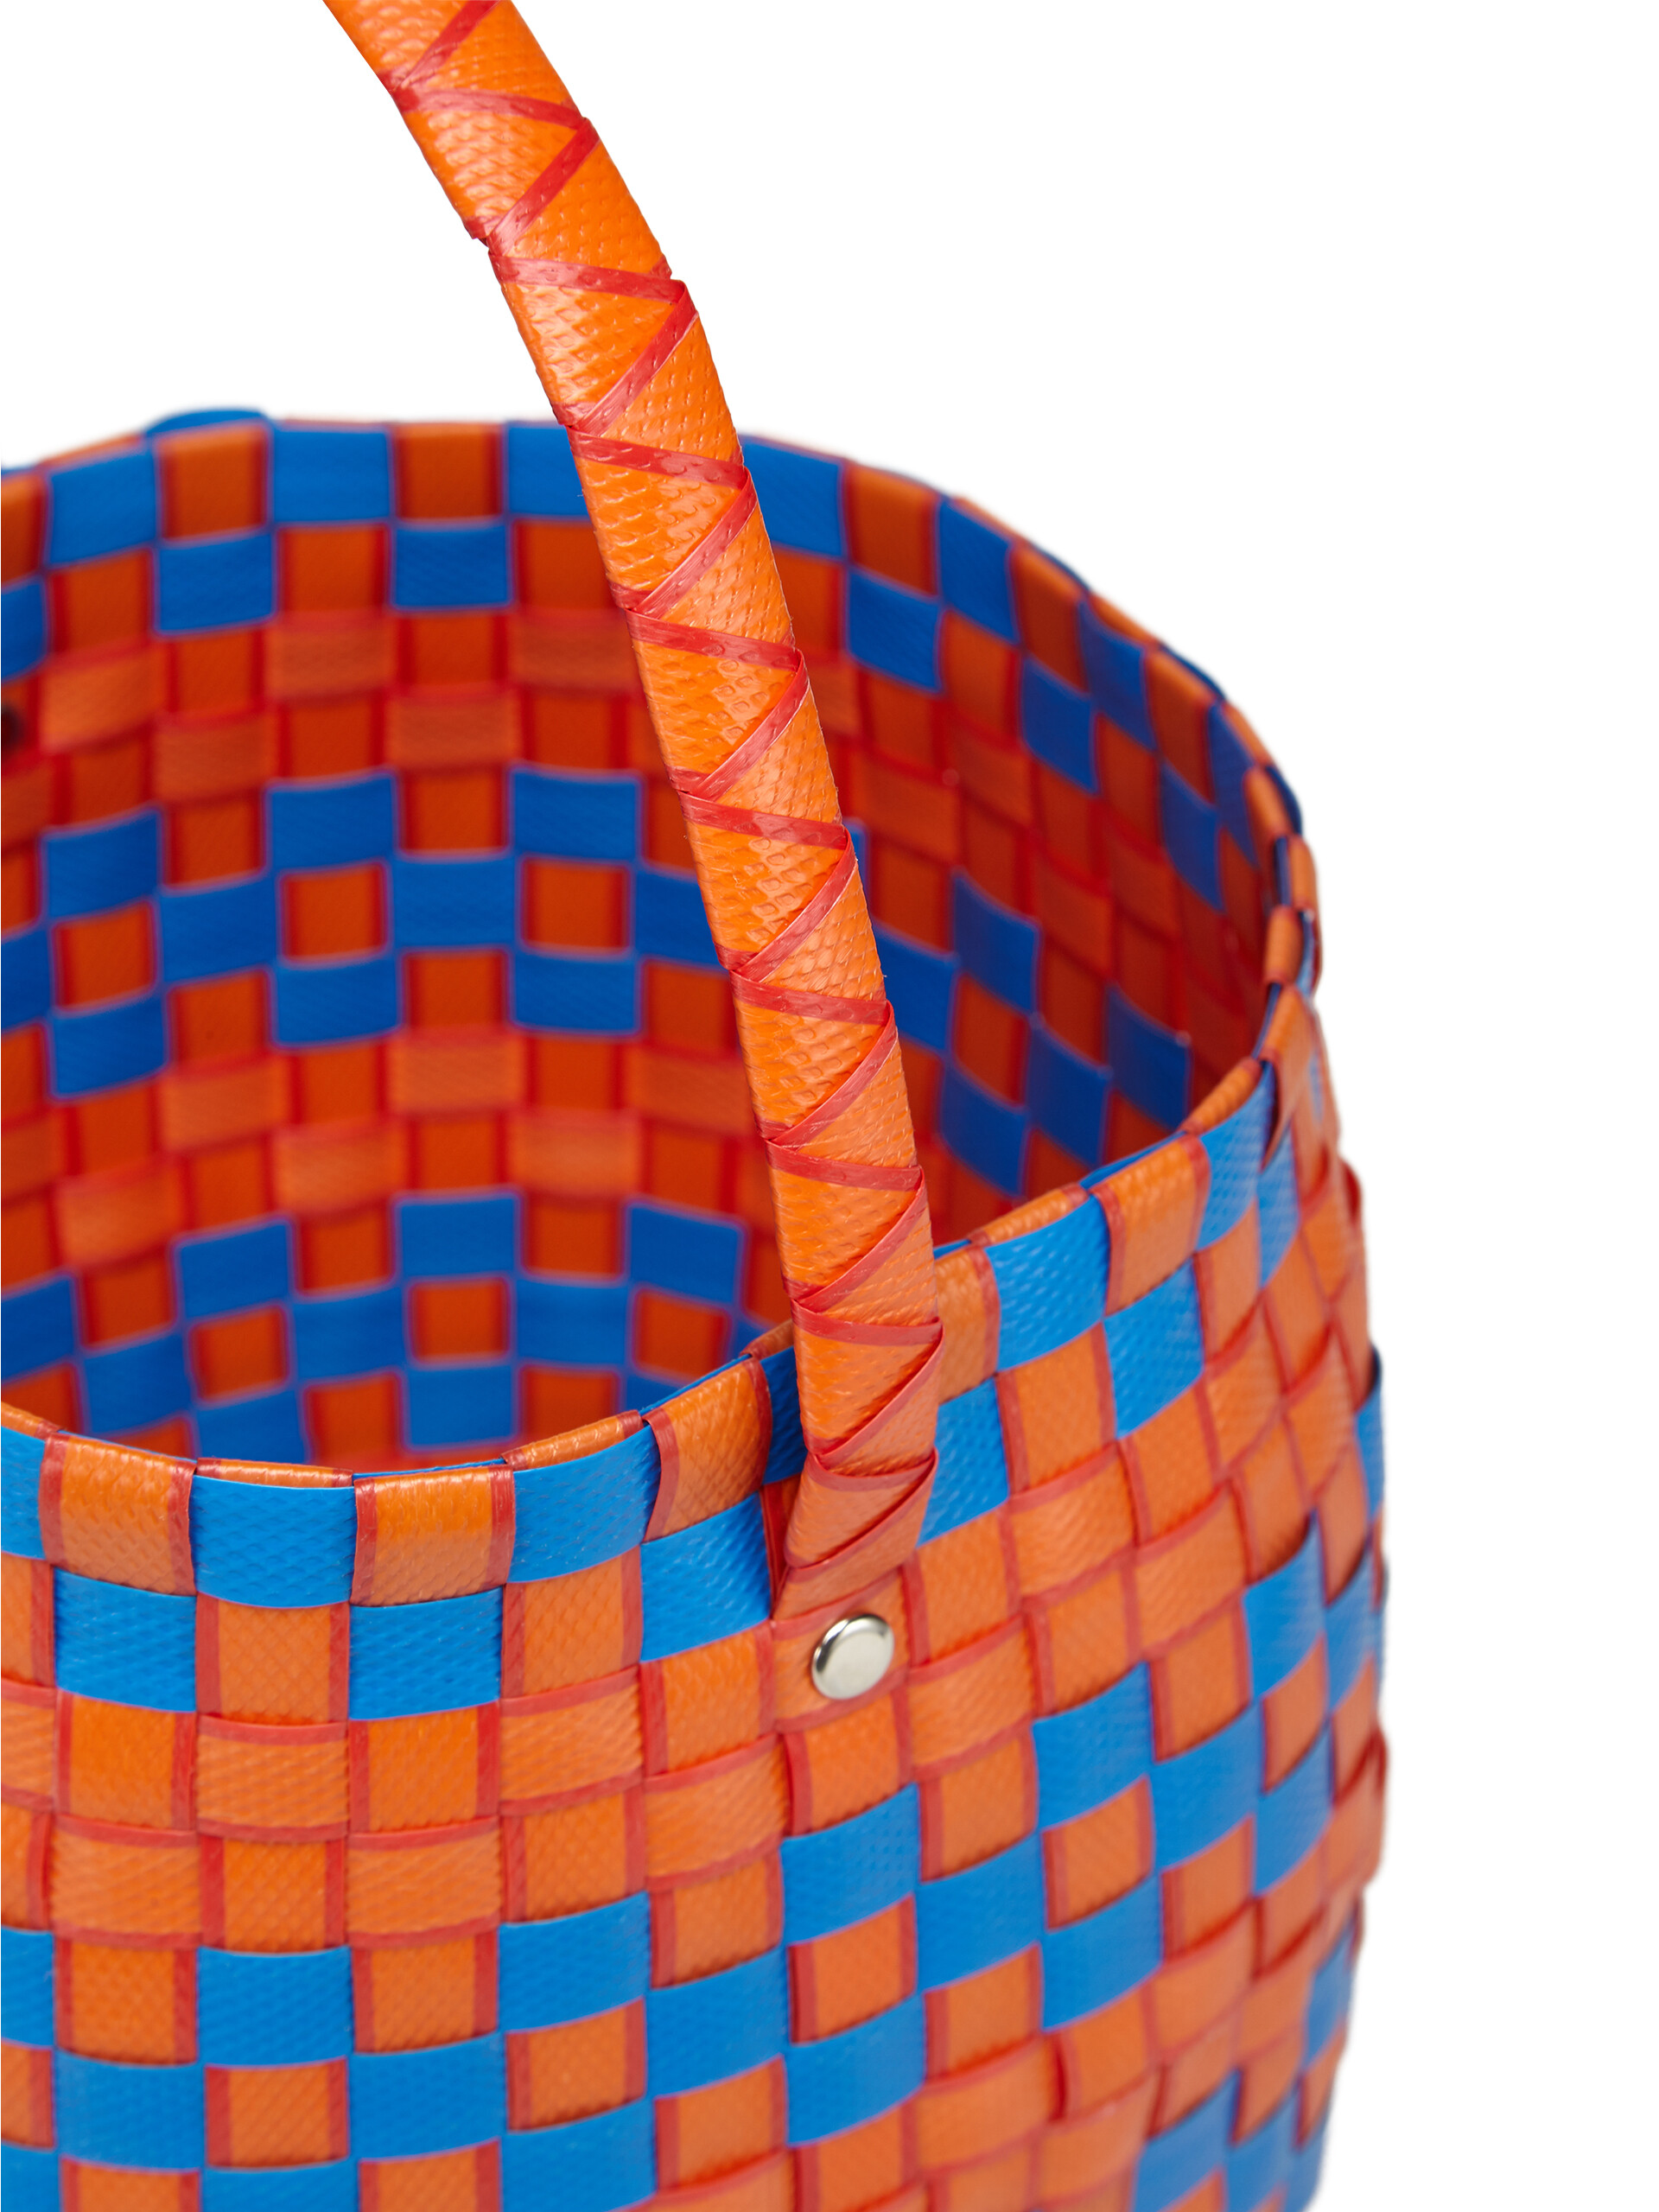 オレンジ ウォーブン素材製 MARNI MARKET POD BASKETバッグ - ショッピングバッグ - Image 4